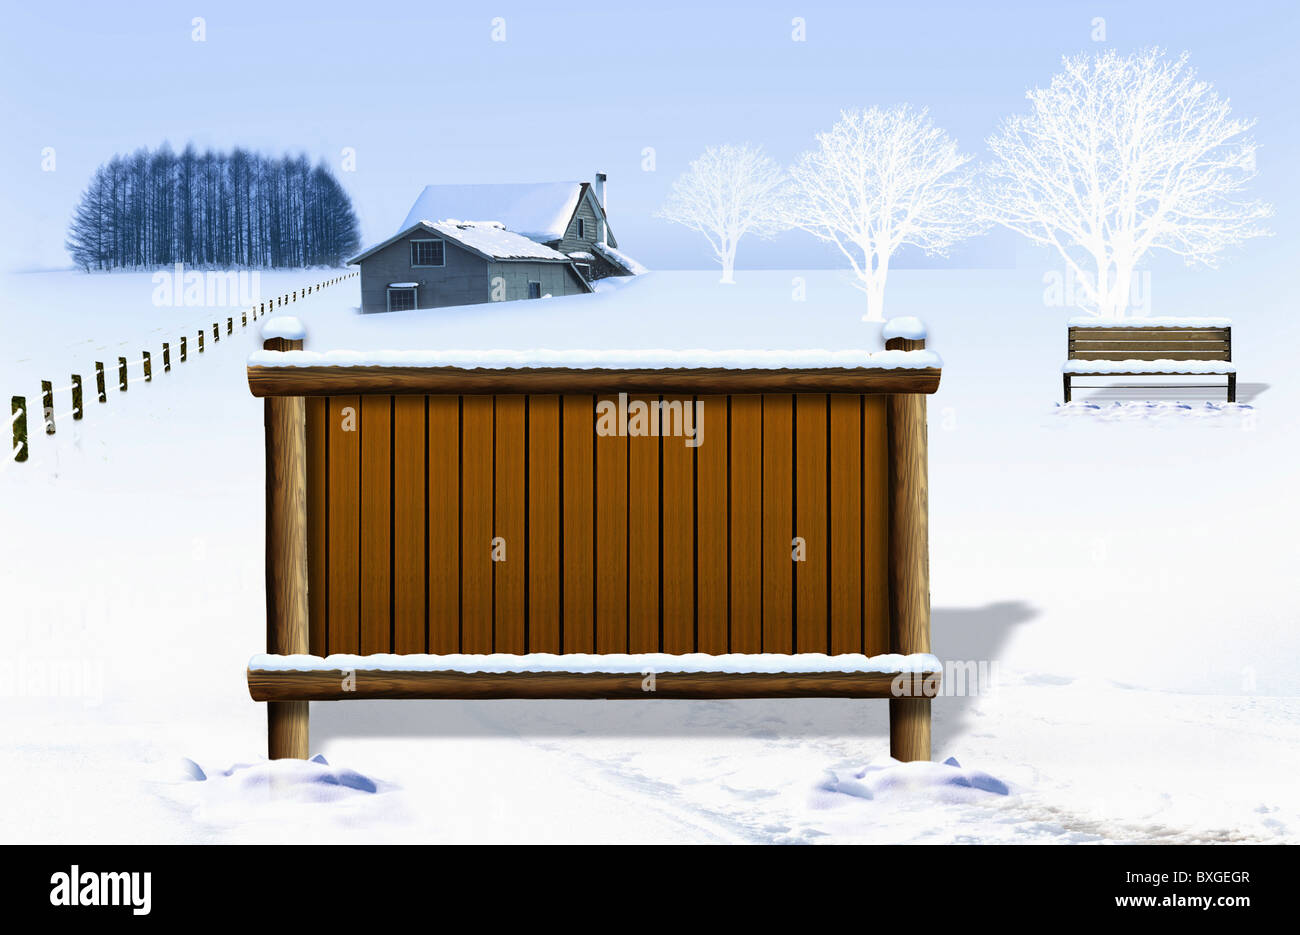 winterscape and memo board Stock Photo